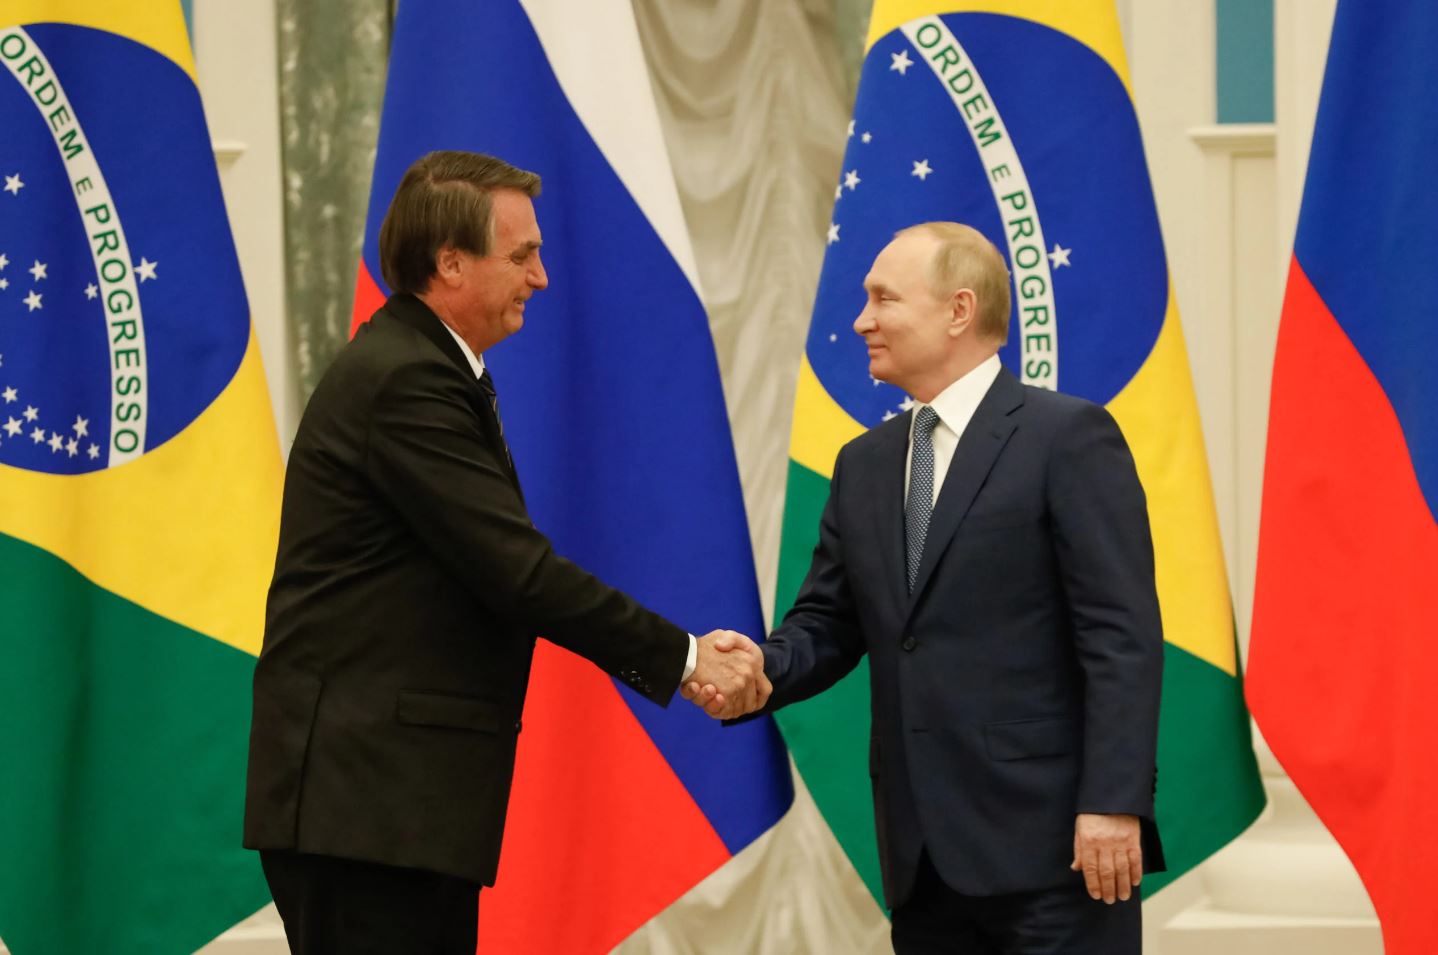 Brazilian President Jair Bolsonaro (left) and Russian President Vladimir Putin (left).